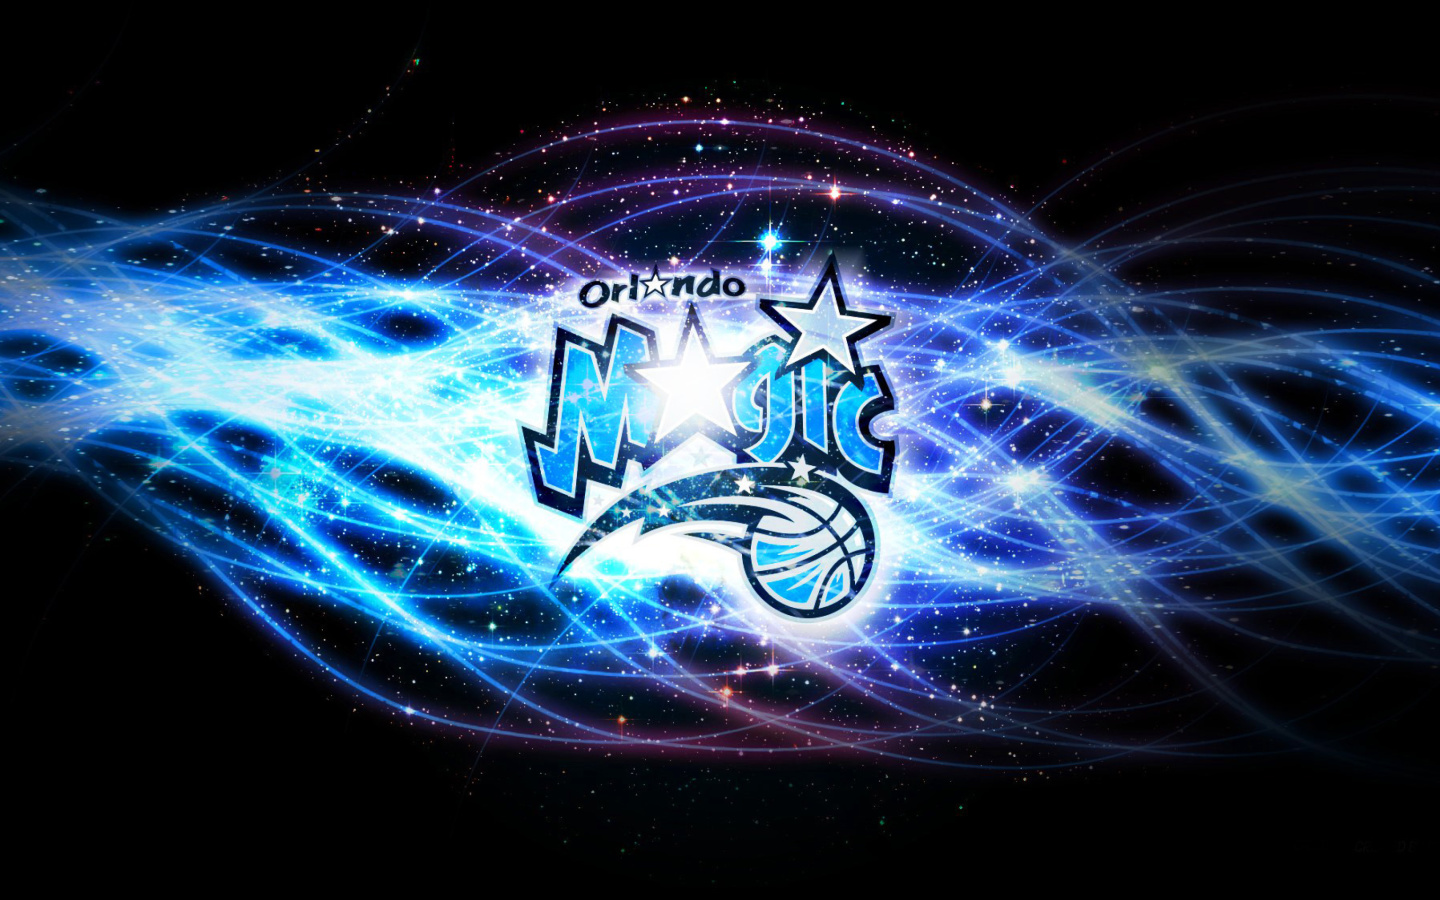 Sfondi Orlando Magic, Southeast Division 1440x900